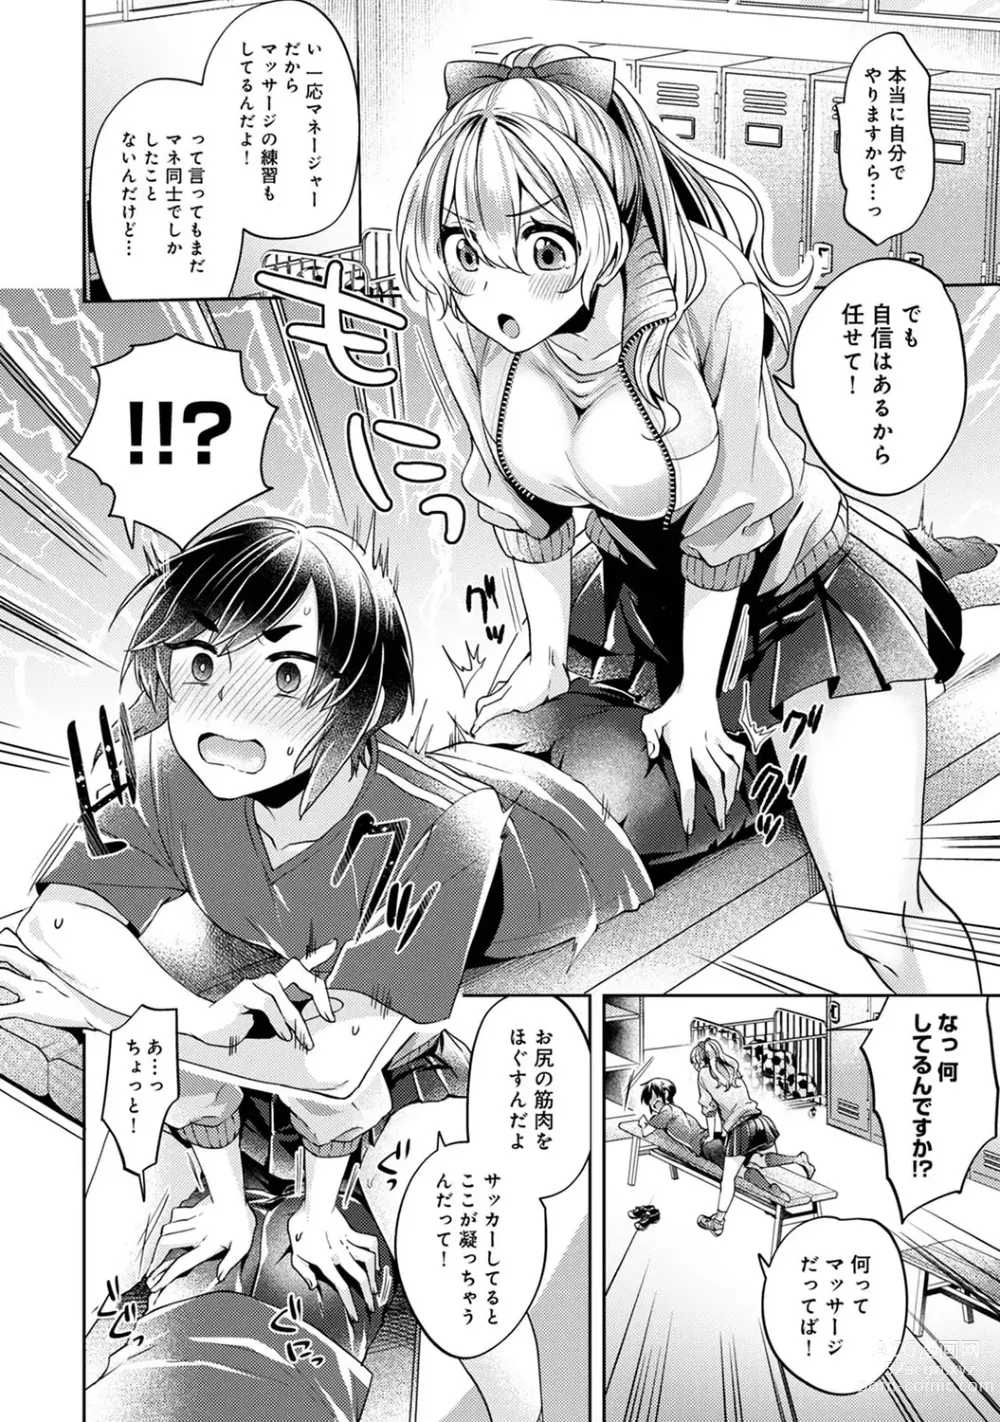 Page 8 of manga Suki Suki Diary